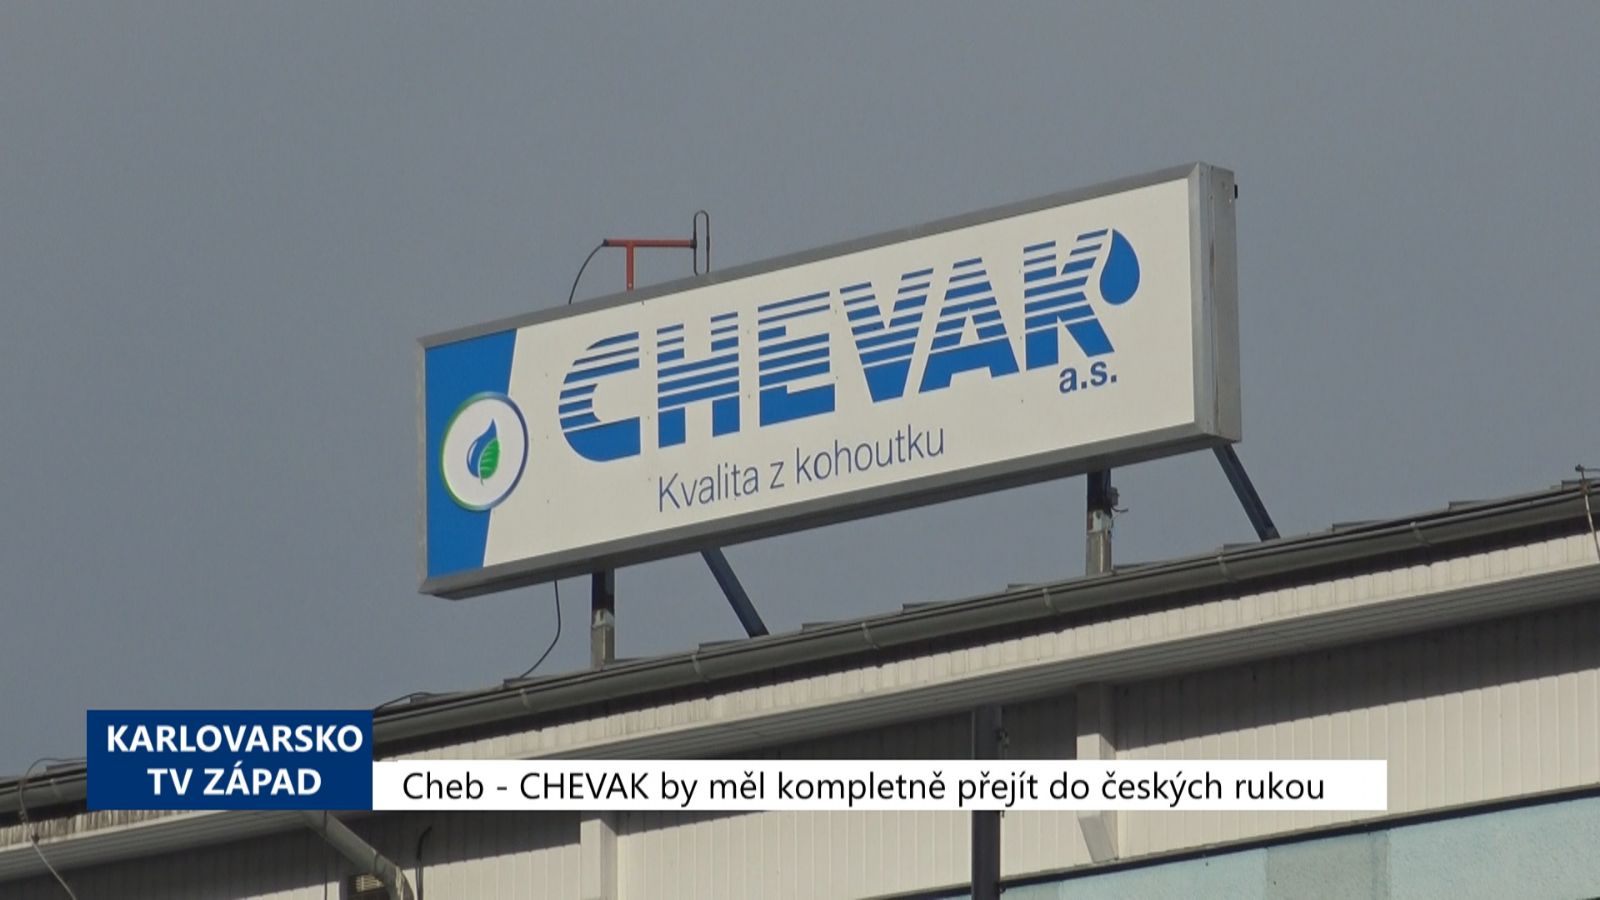 Cheb: CHEVAK by měl kompletně přejít do českých rukou (TV Západ)